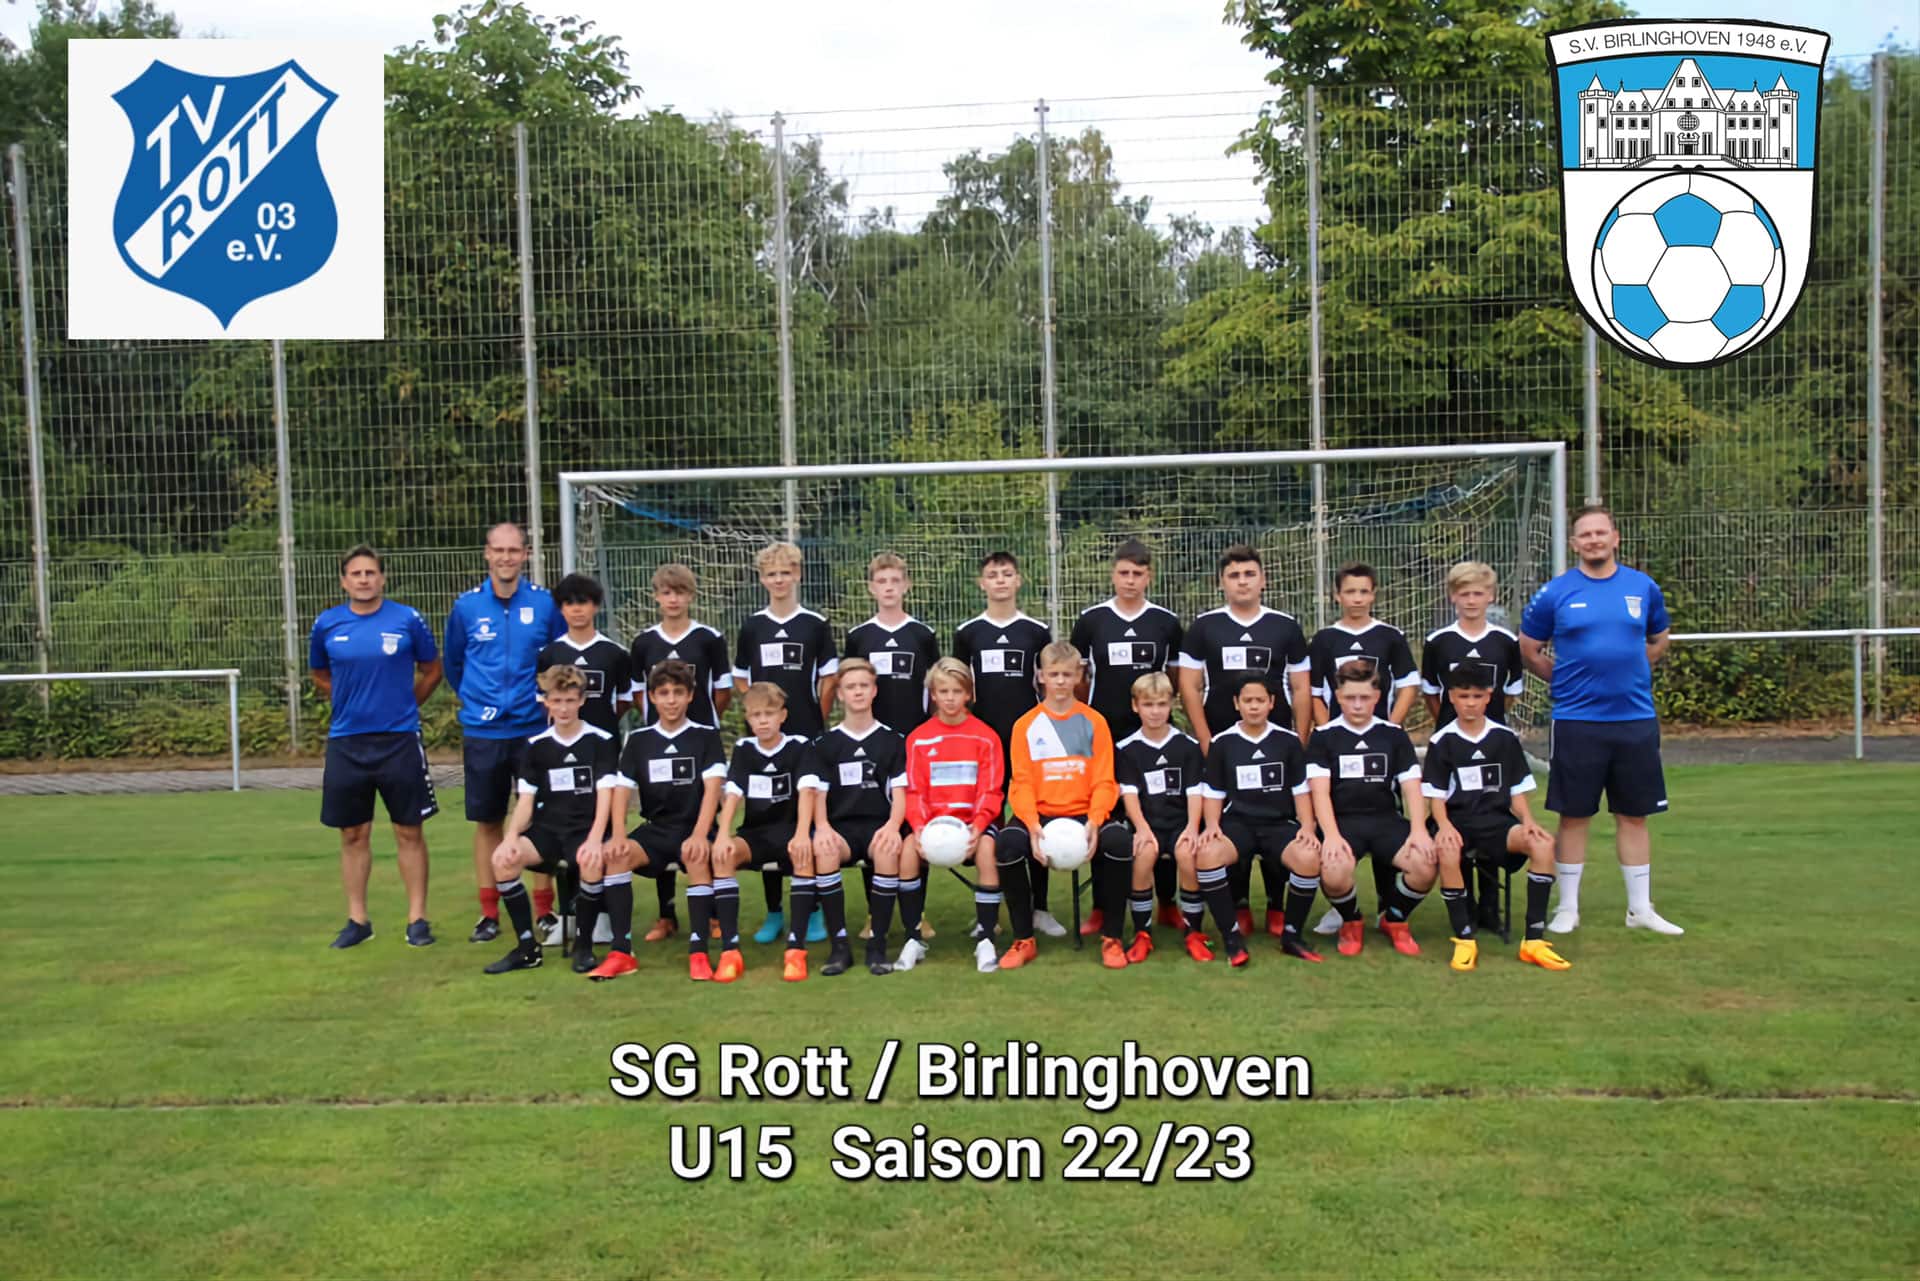 sv-birlinghoven-u15-fussballverein-sportverein-sankt-augustin-juniorion-u15-mannschaft